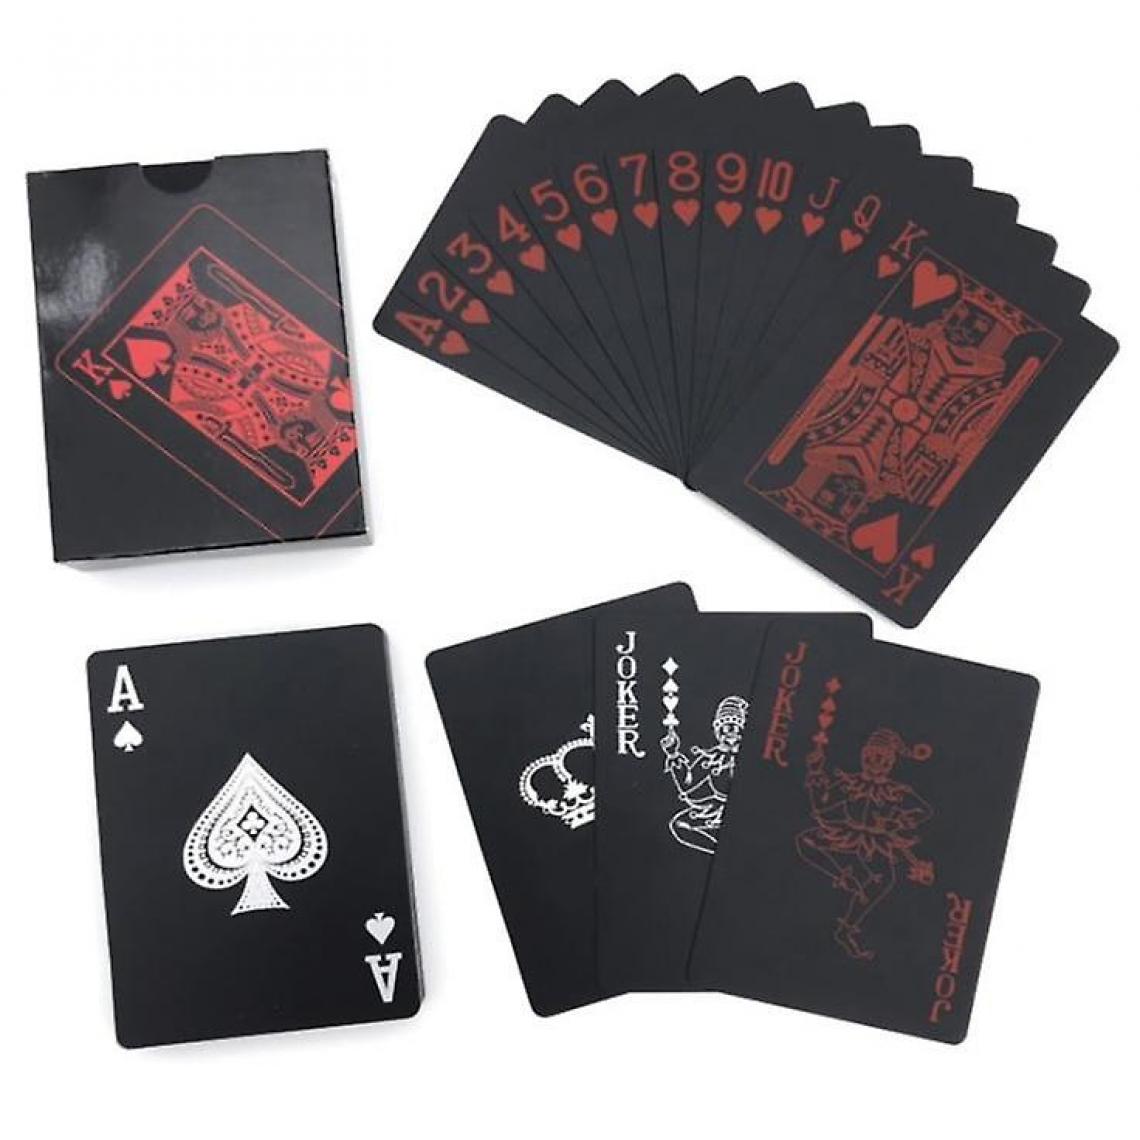 Universal - 2 cartes à jouer et cartes à jouer étanches, PVC plastique souple (noir) - Jeux de cartes